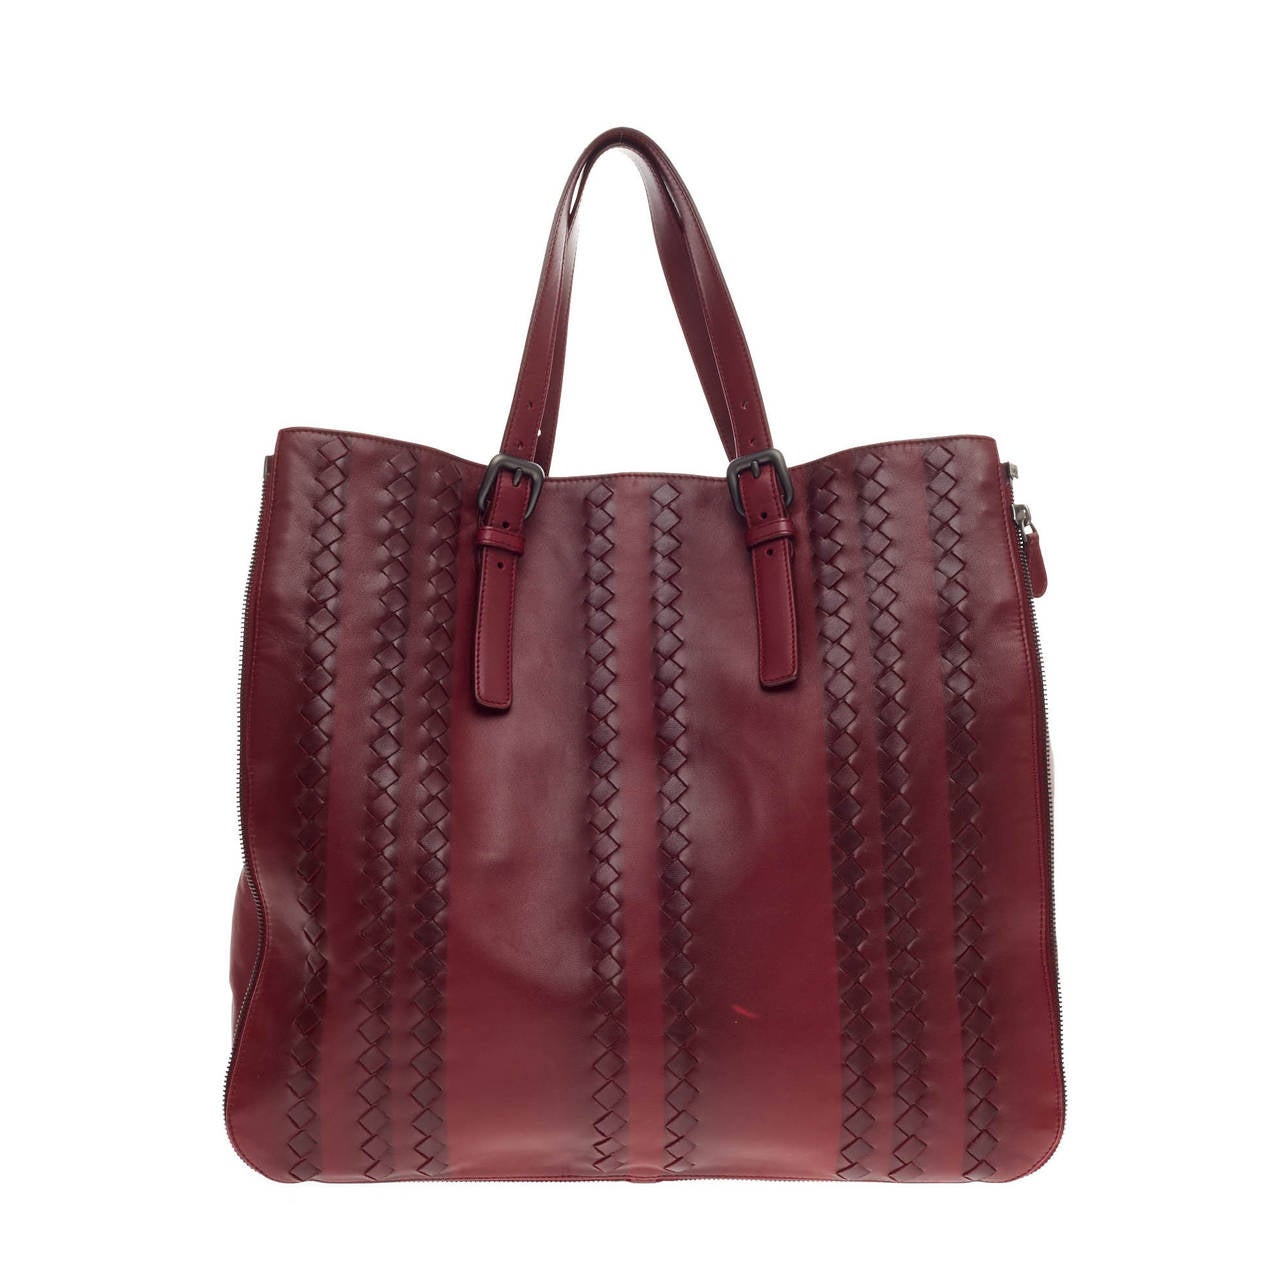 Bottega Veneta Expandable Zip Around Tote Leather with Intrecciato Detail